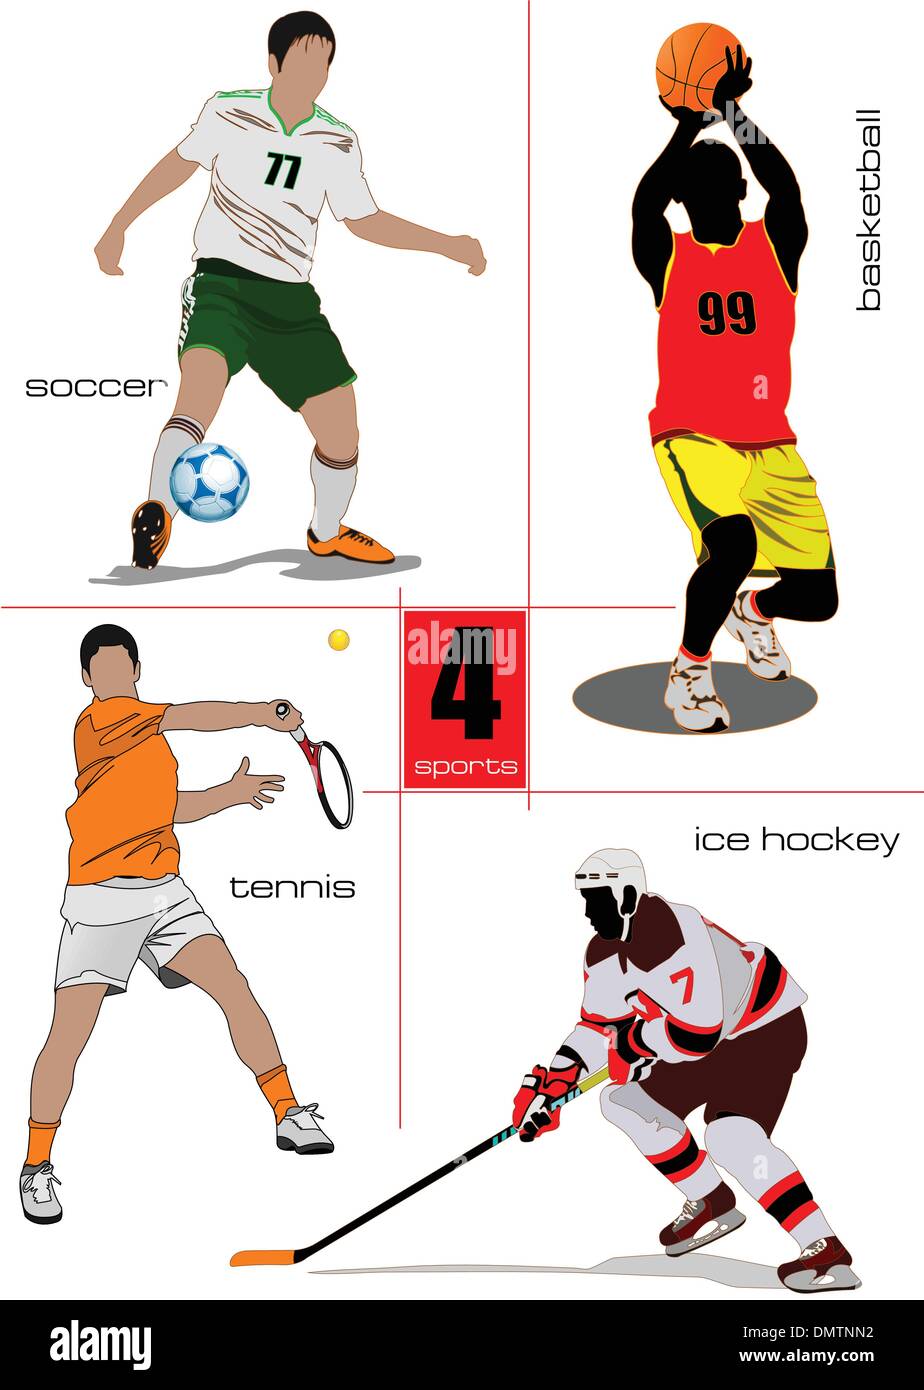 ¿Cuáles son los cuatro tipos de deporte